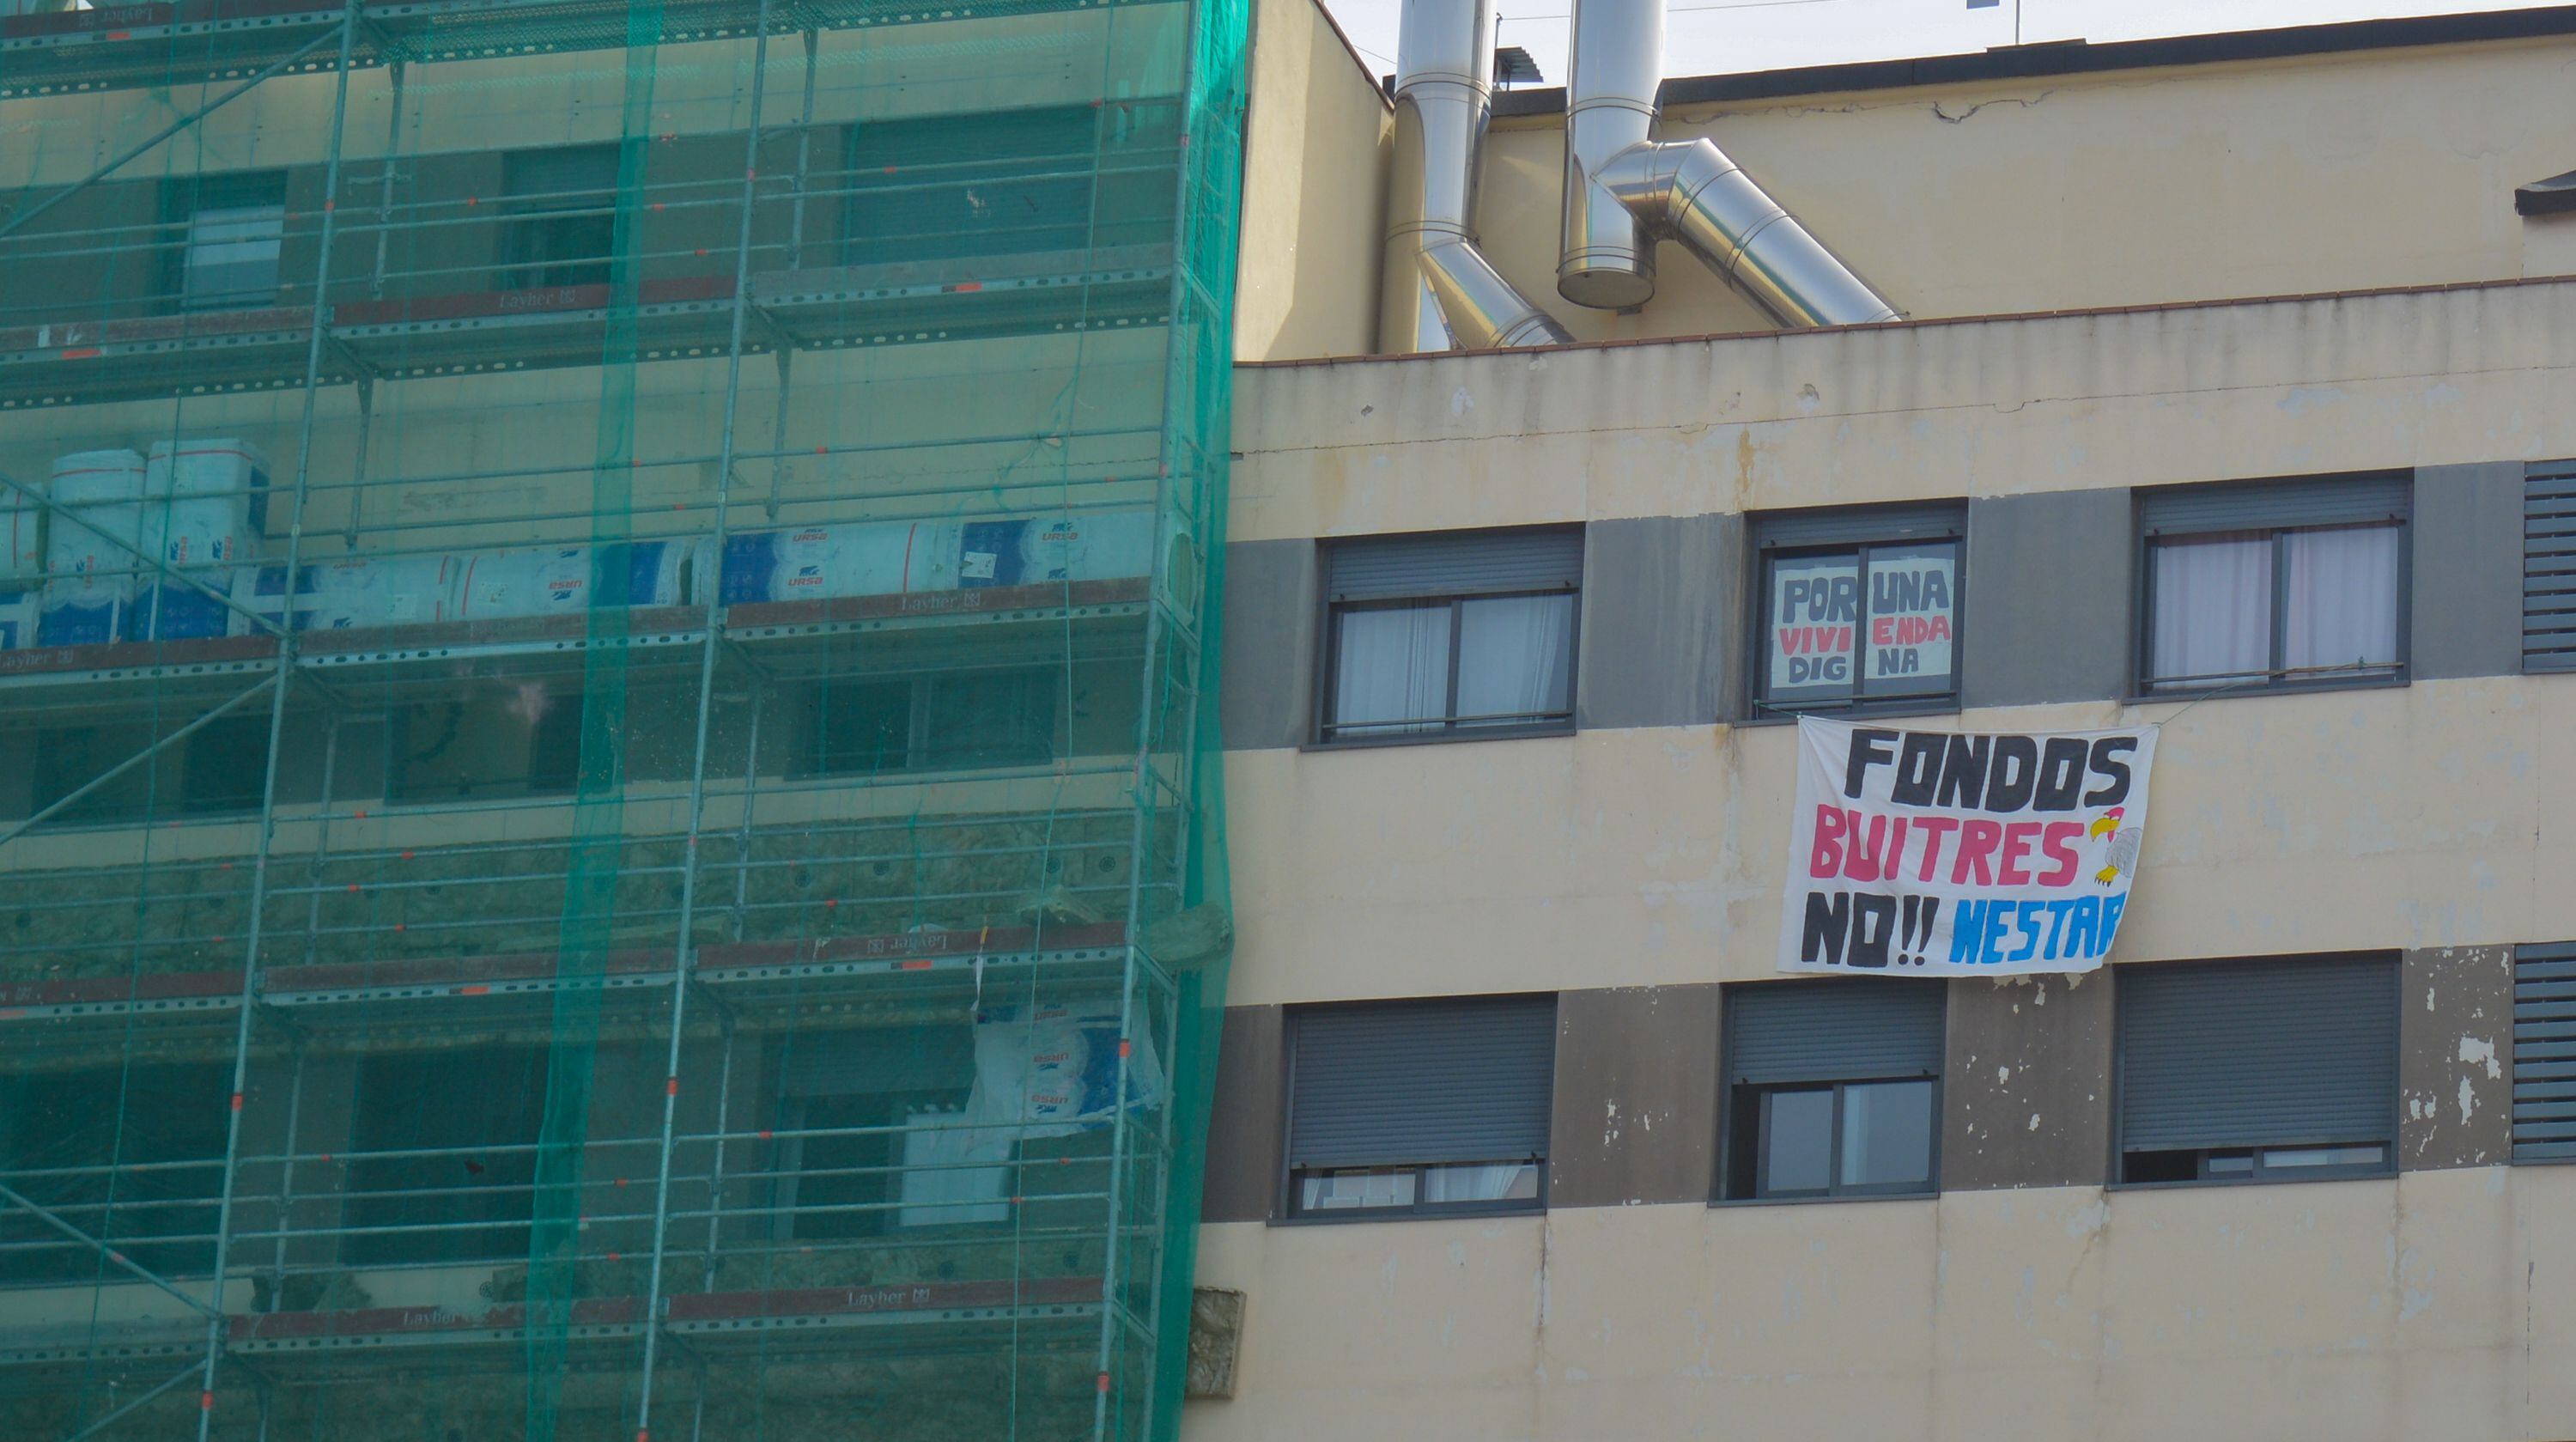 Los vecinos de un bloque en Vallecas señalan a Azora por desatender el mantenimiento del edificio y agregar cláusulas abusivas en los contratos.